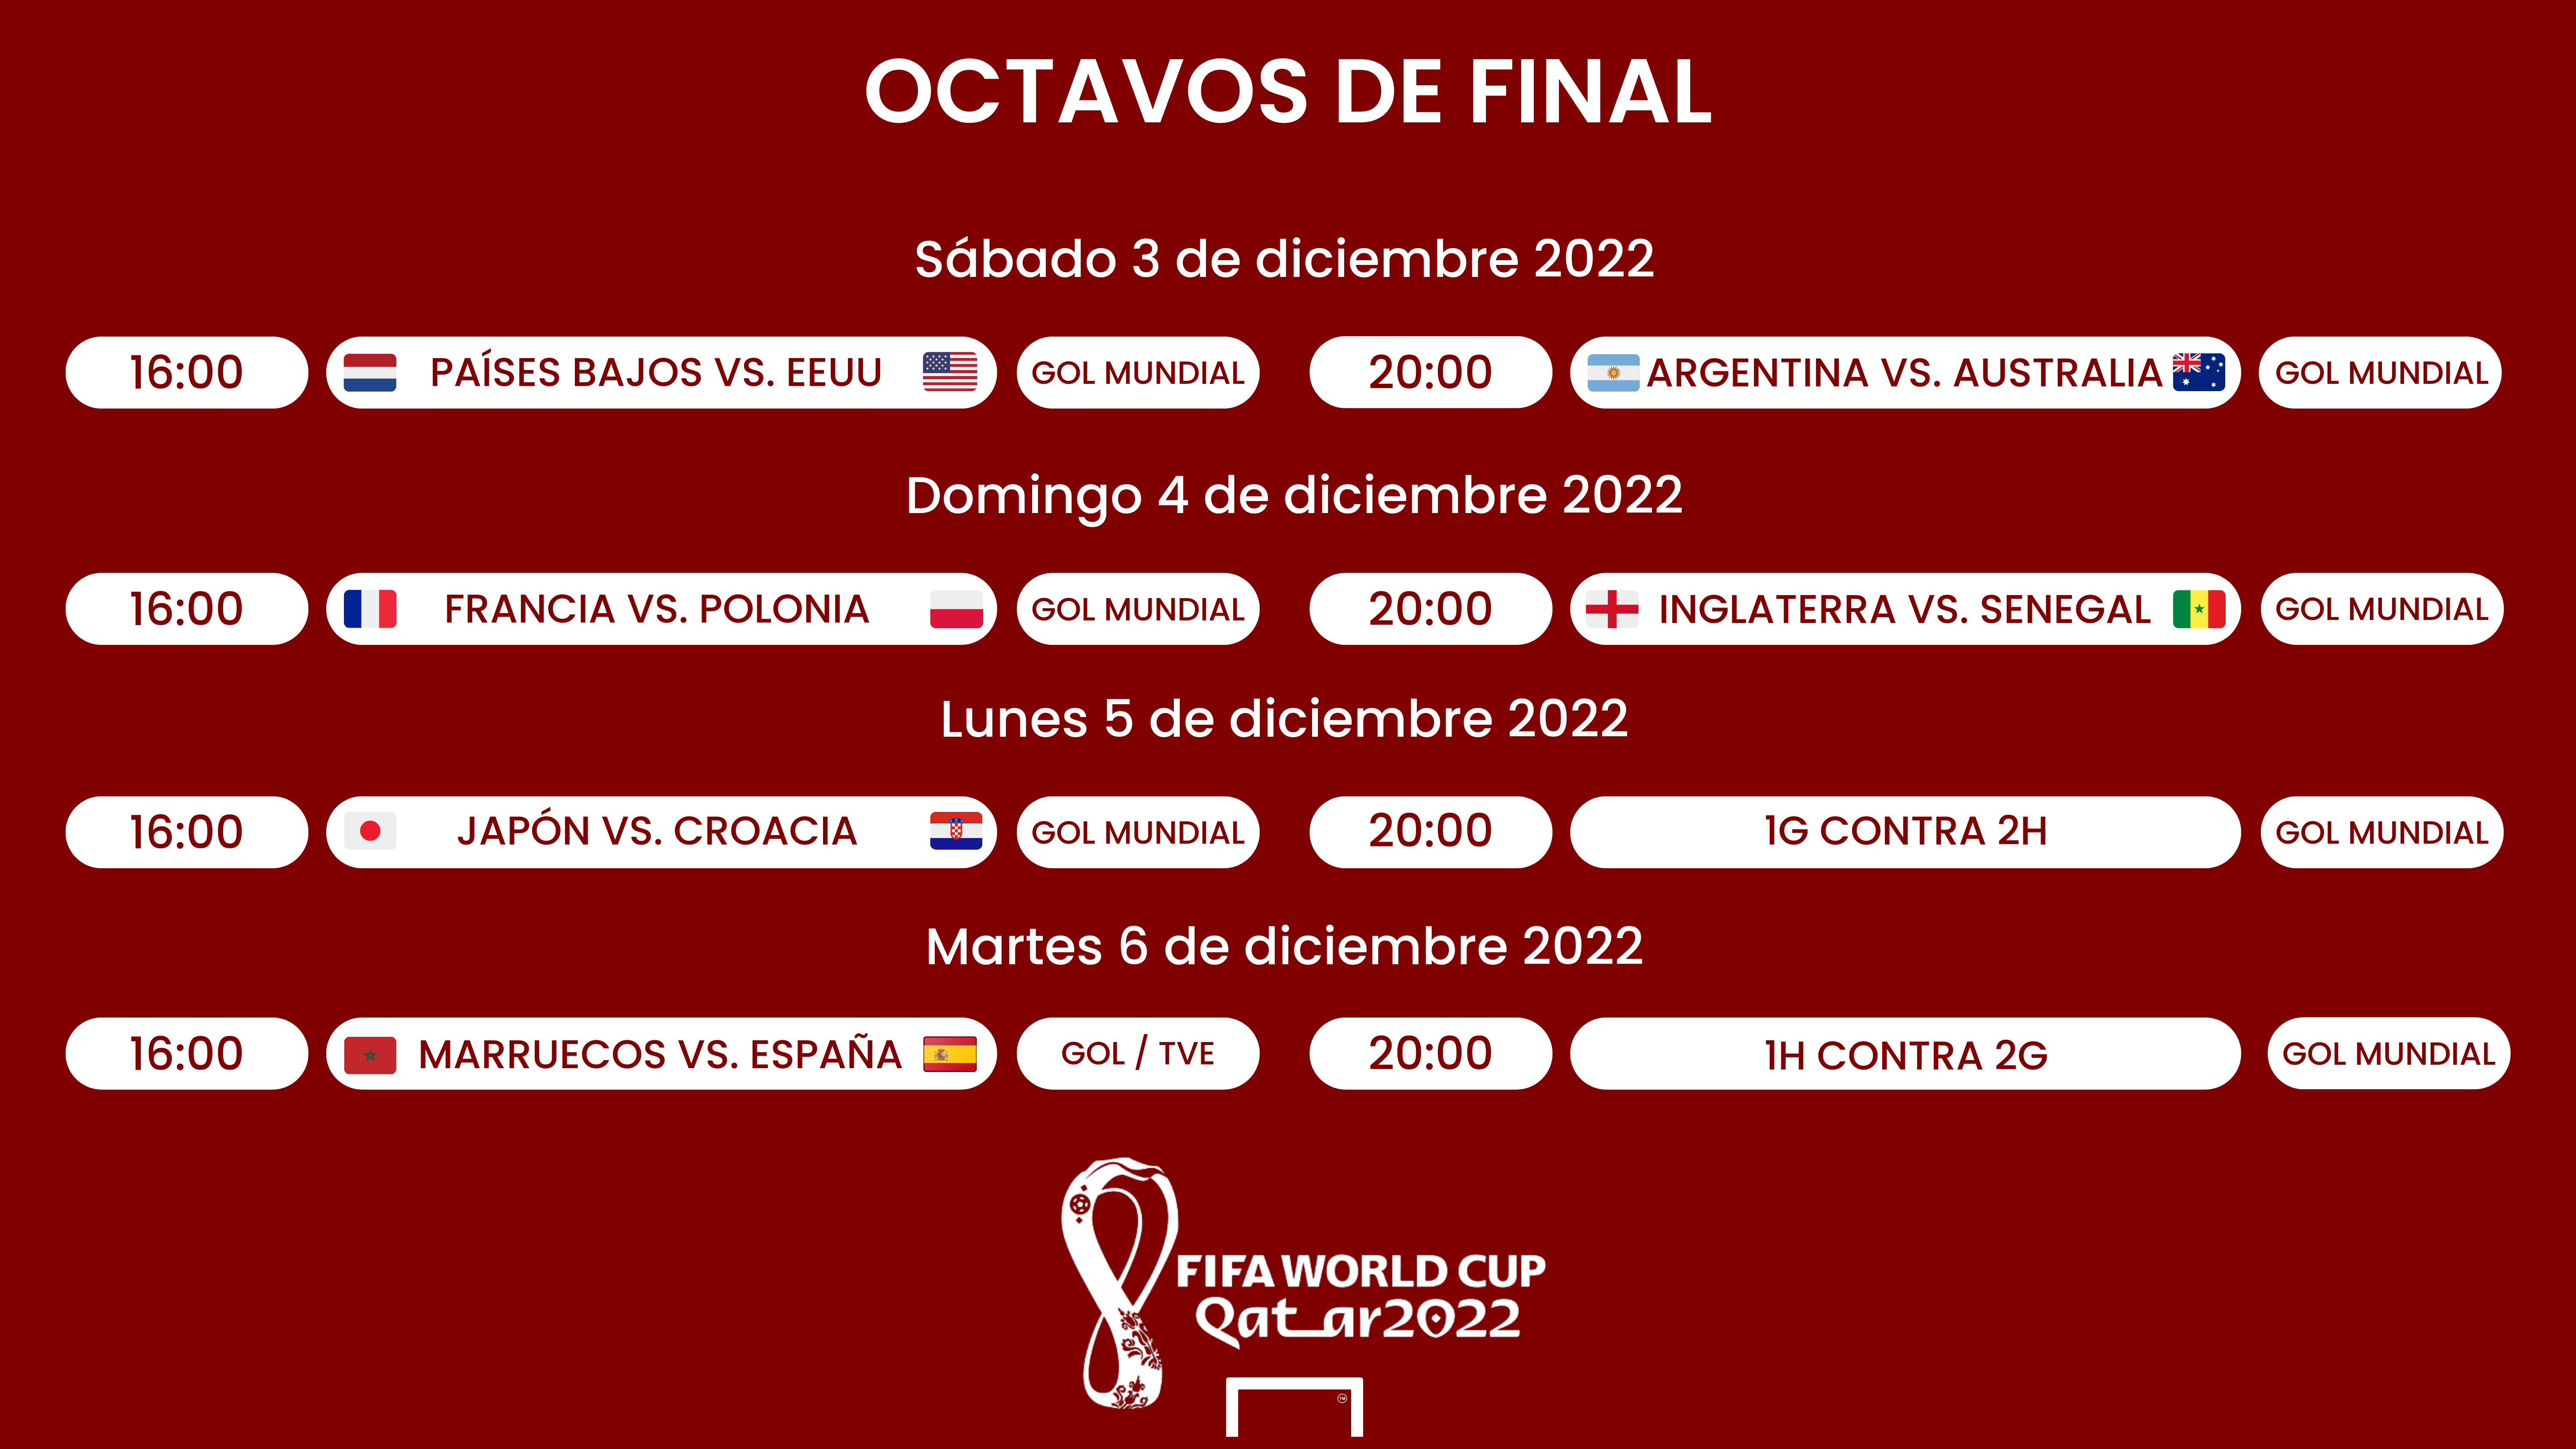 Octavos de final del Qatar 2022: son, selecciones fechas, horarios y resultados | Goal.com Espana